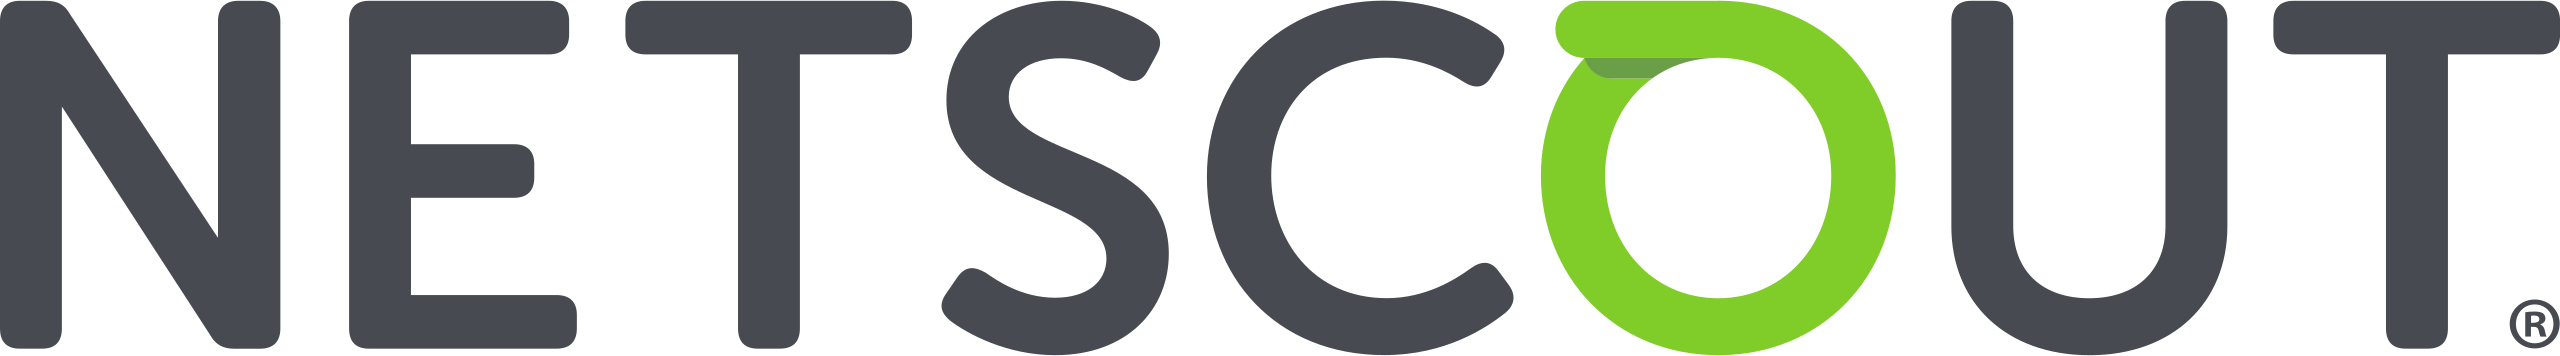 NetScout_logo.svg